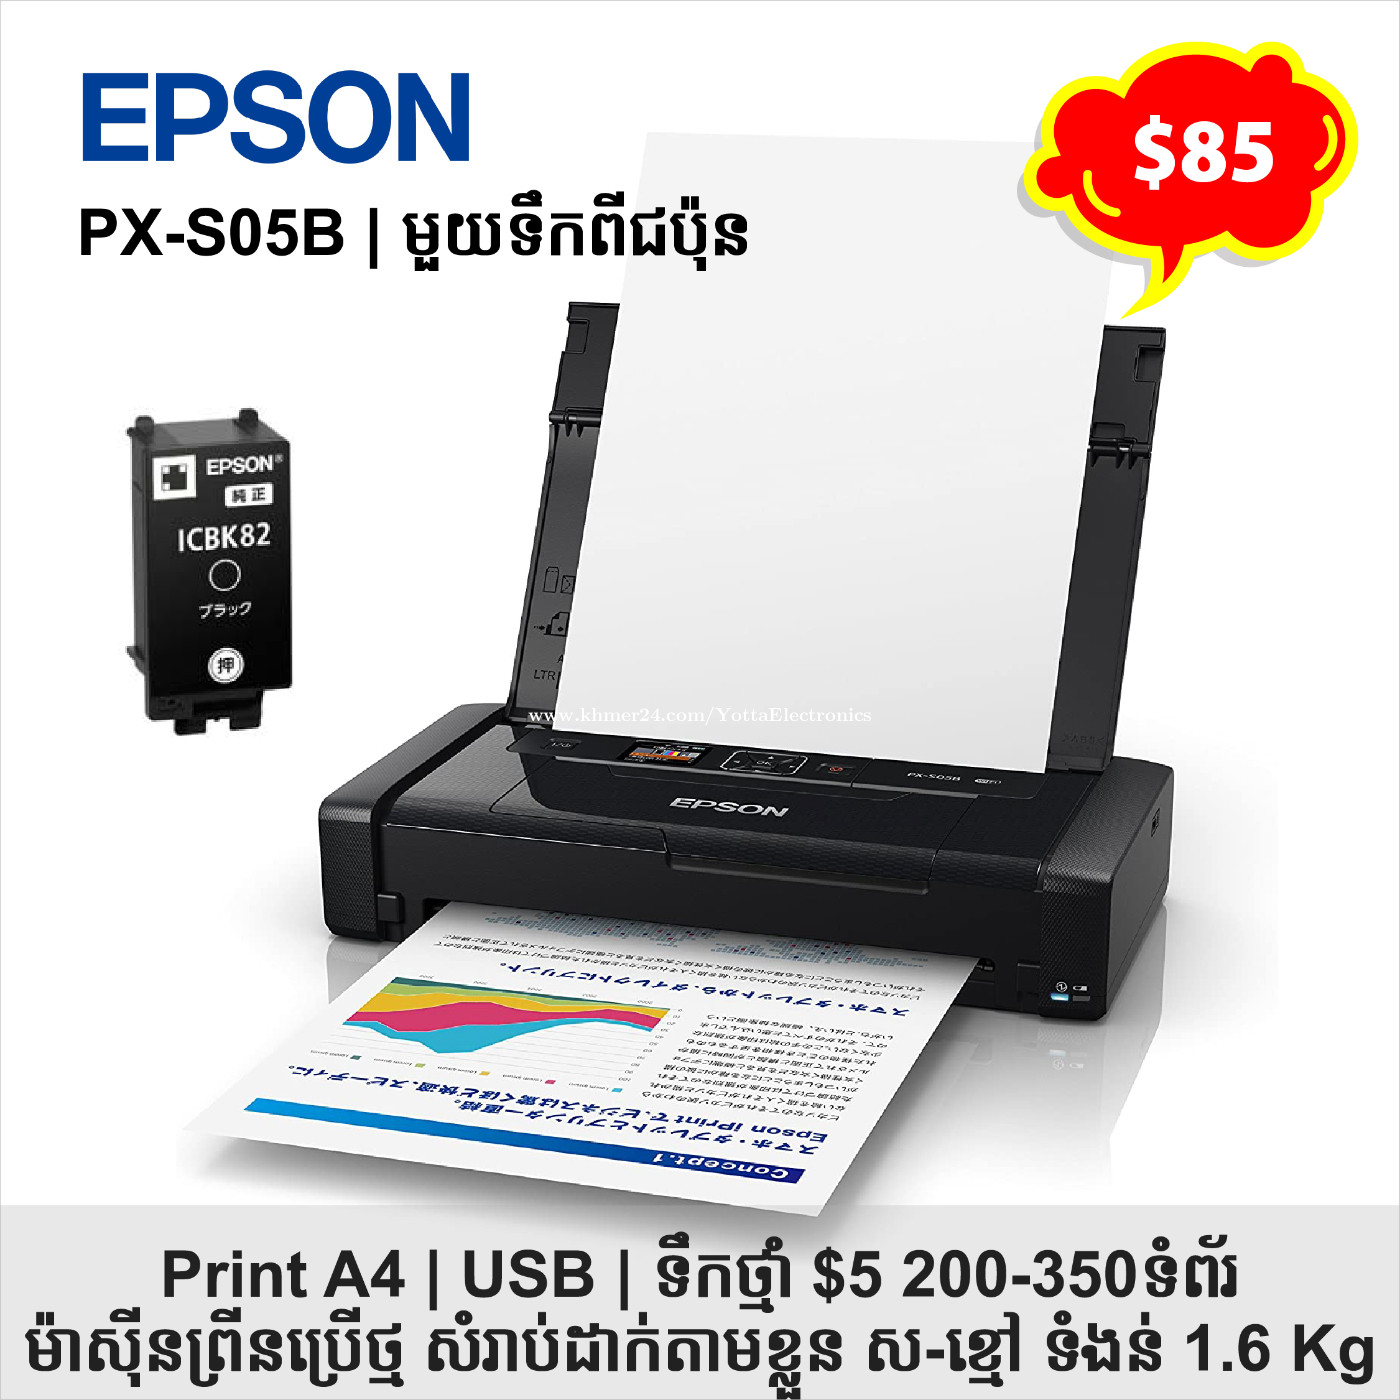 EPSON モバイルプリンター PX-S05B - スピーカー